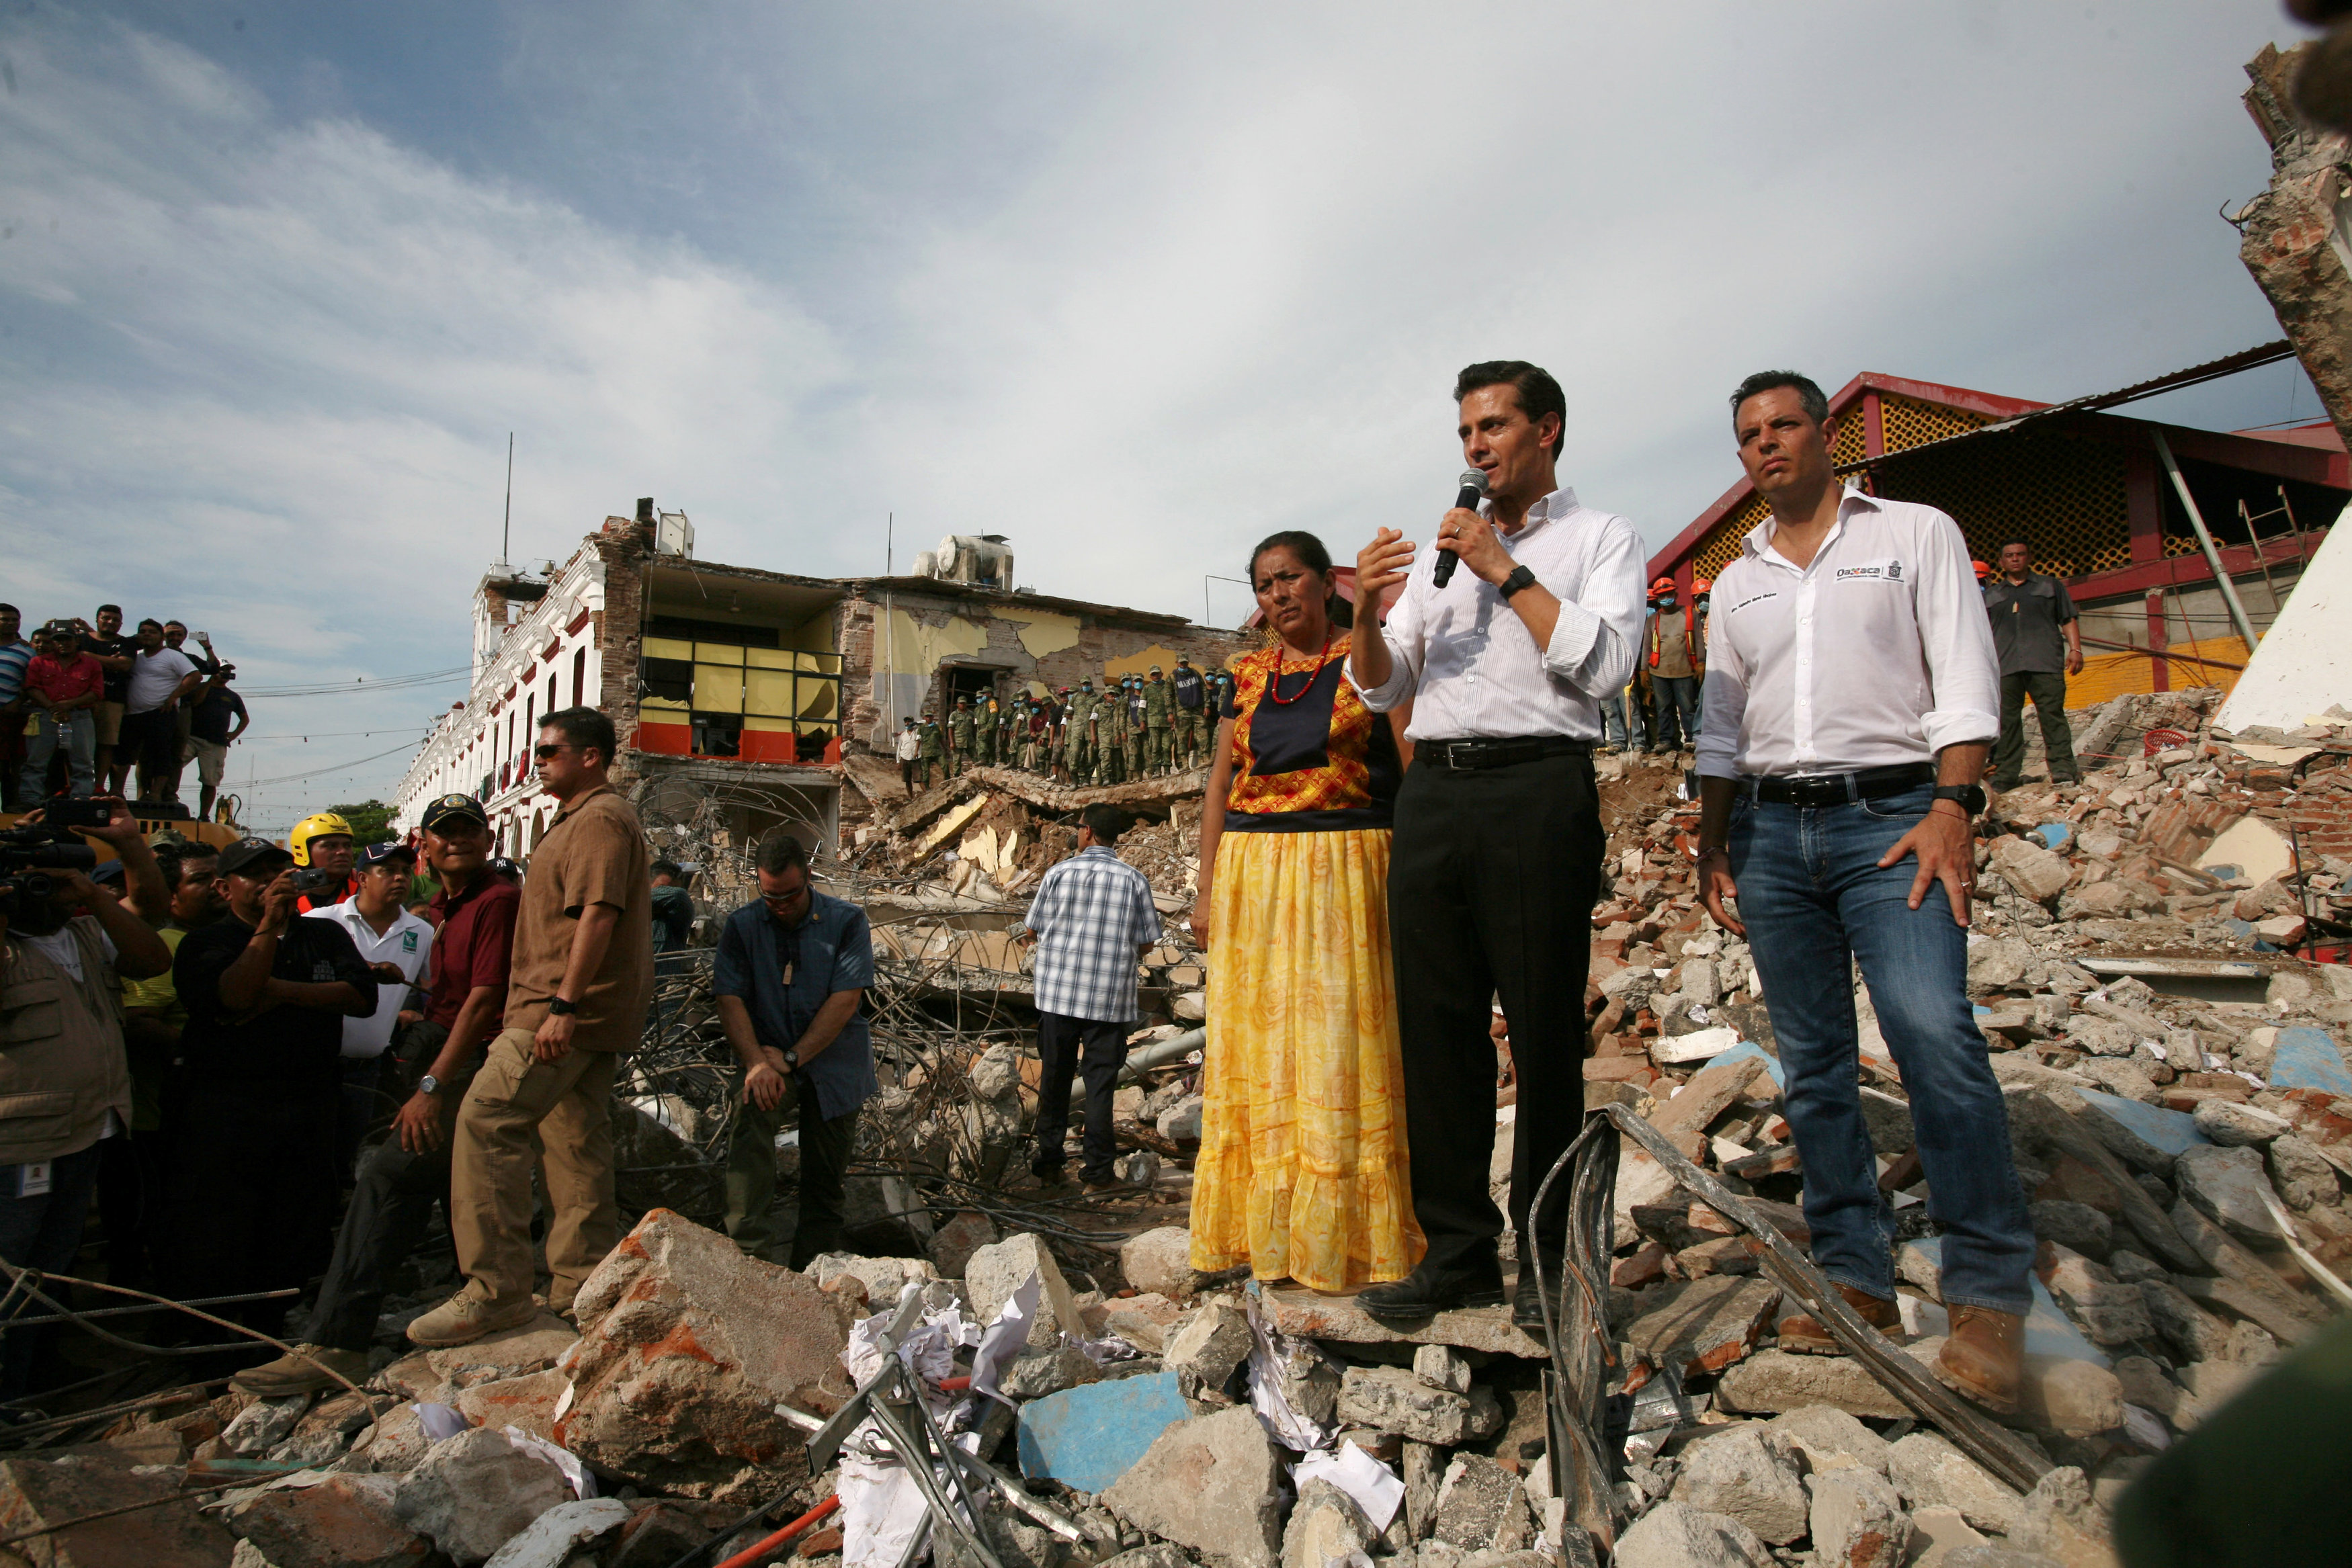 الرئيس المكسيكى يتحدث إلى سكان المناطق المنكوبة